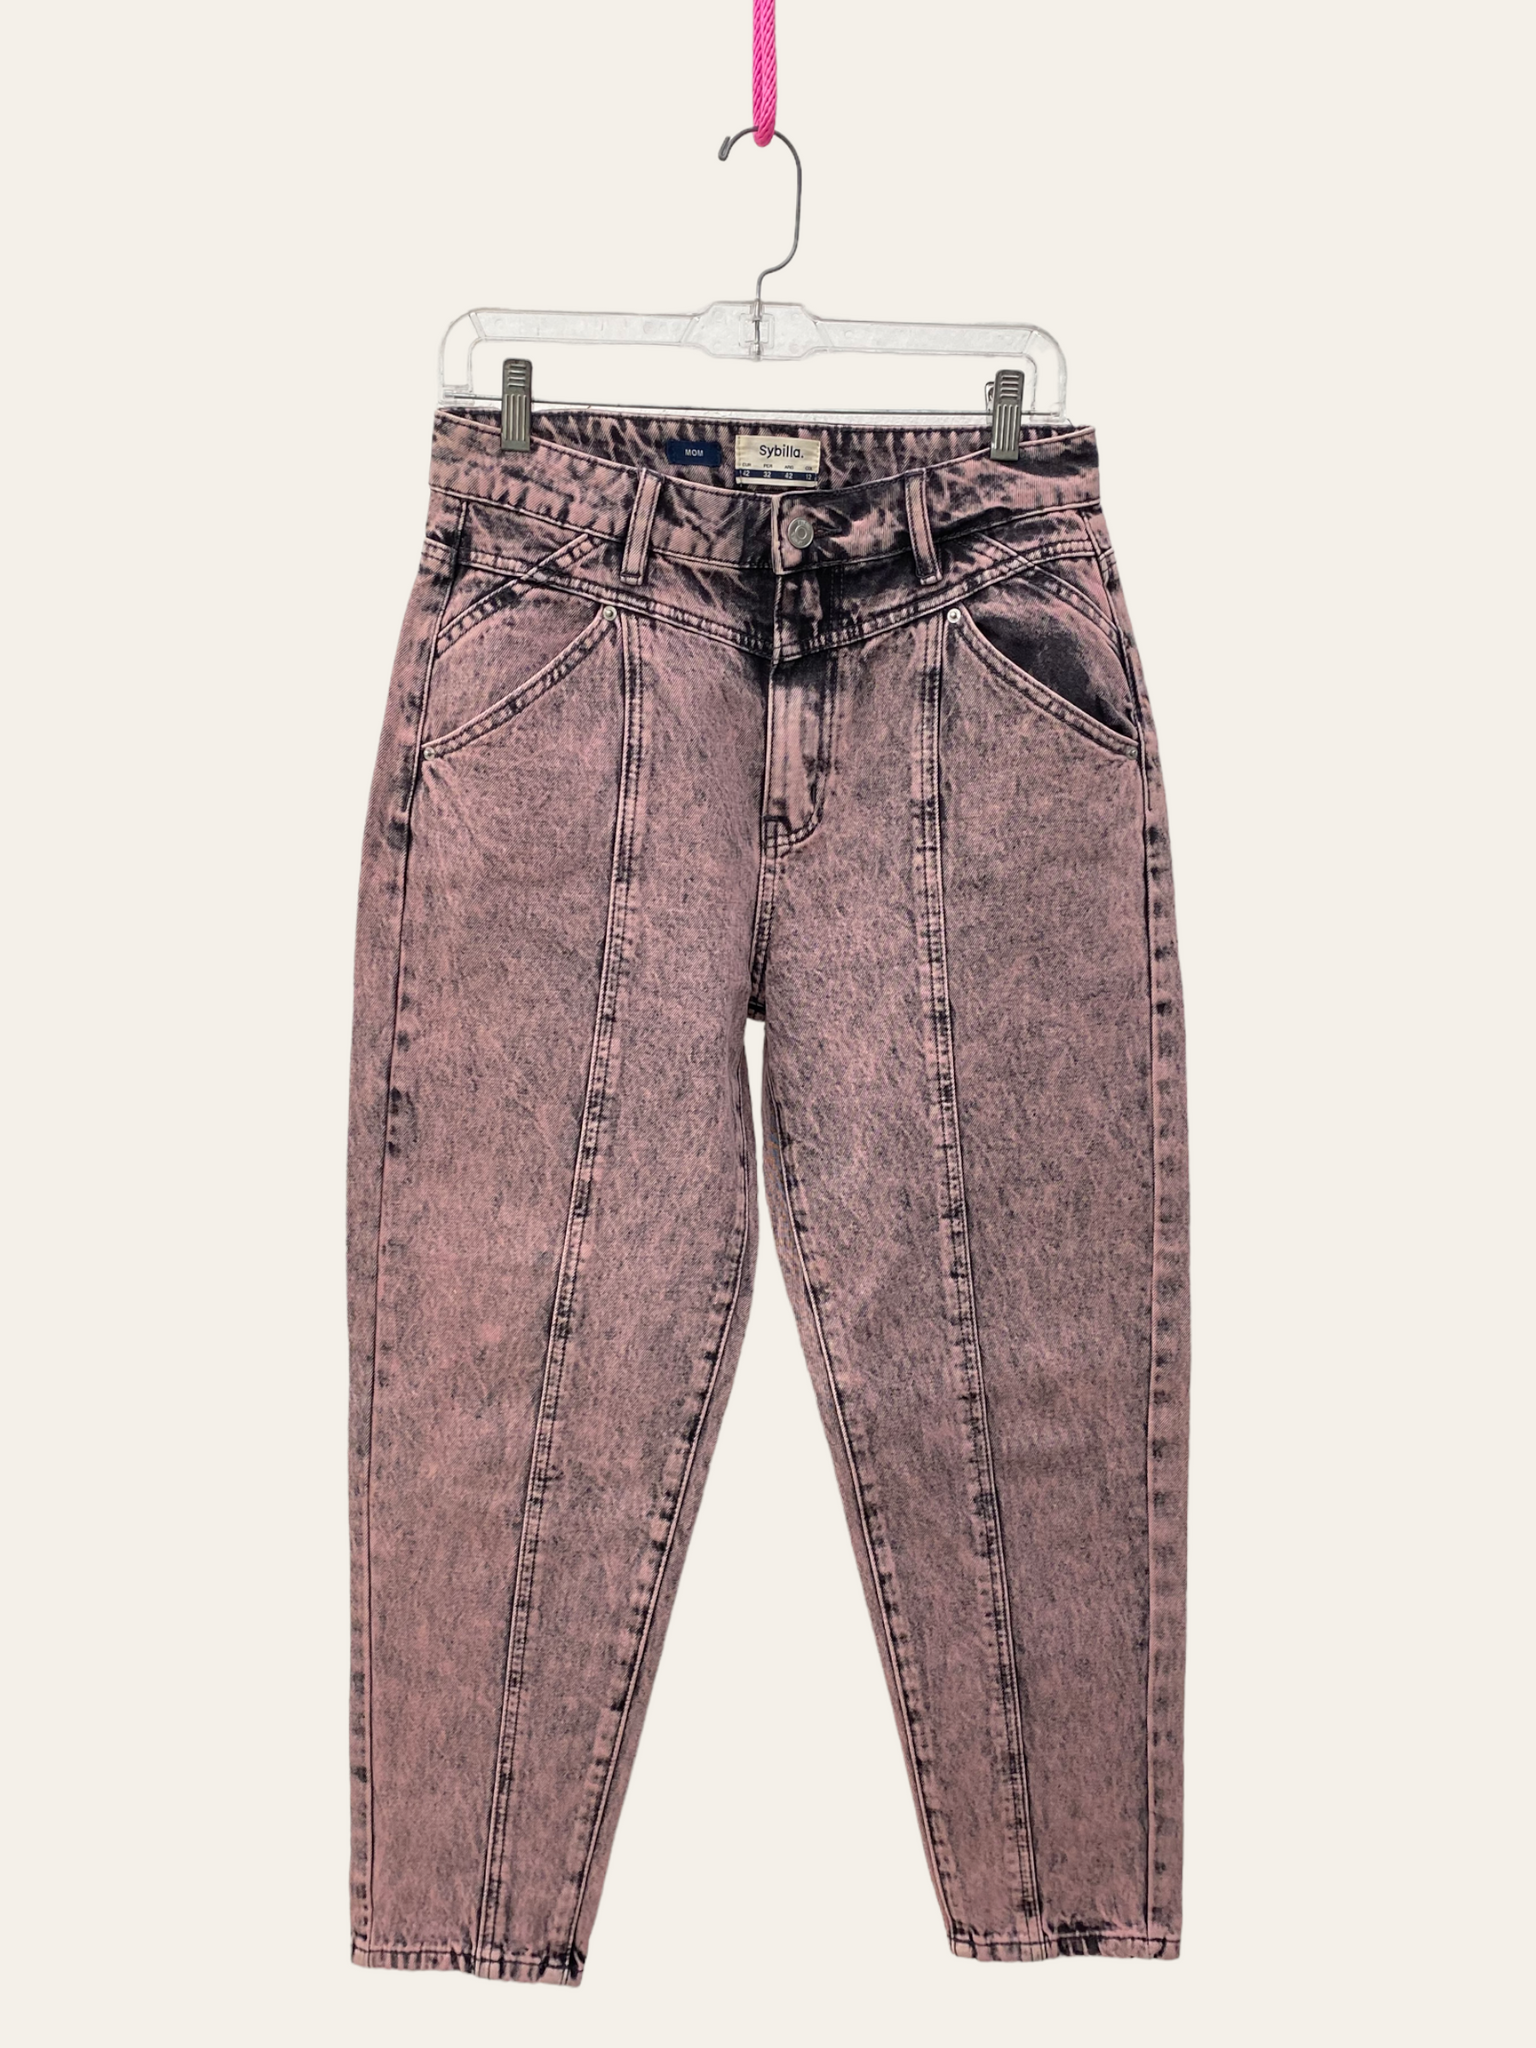 Mom jeans desteñidos rosados / Pre-loved